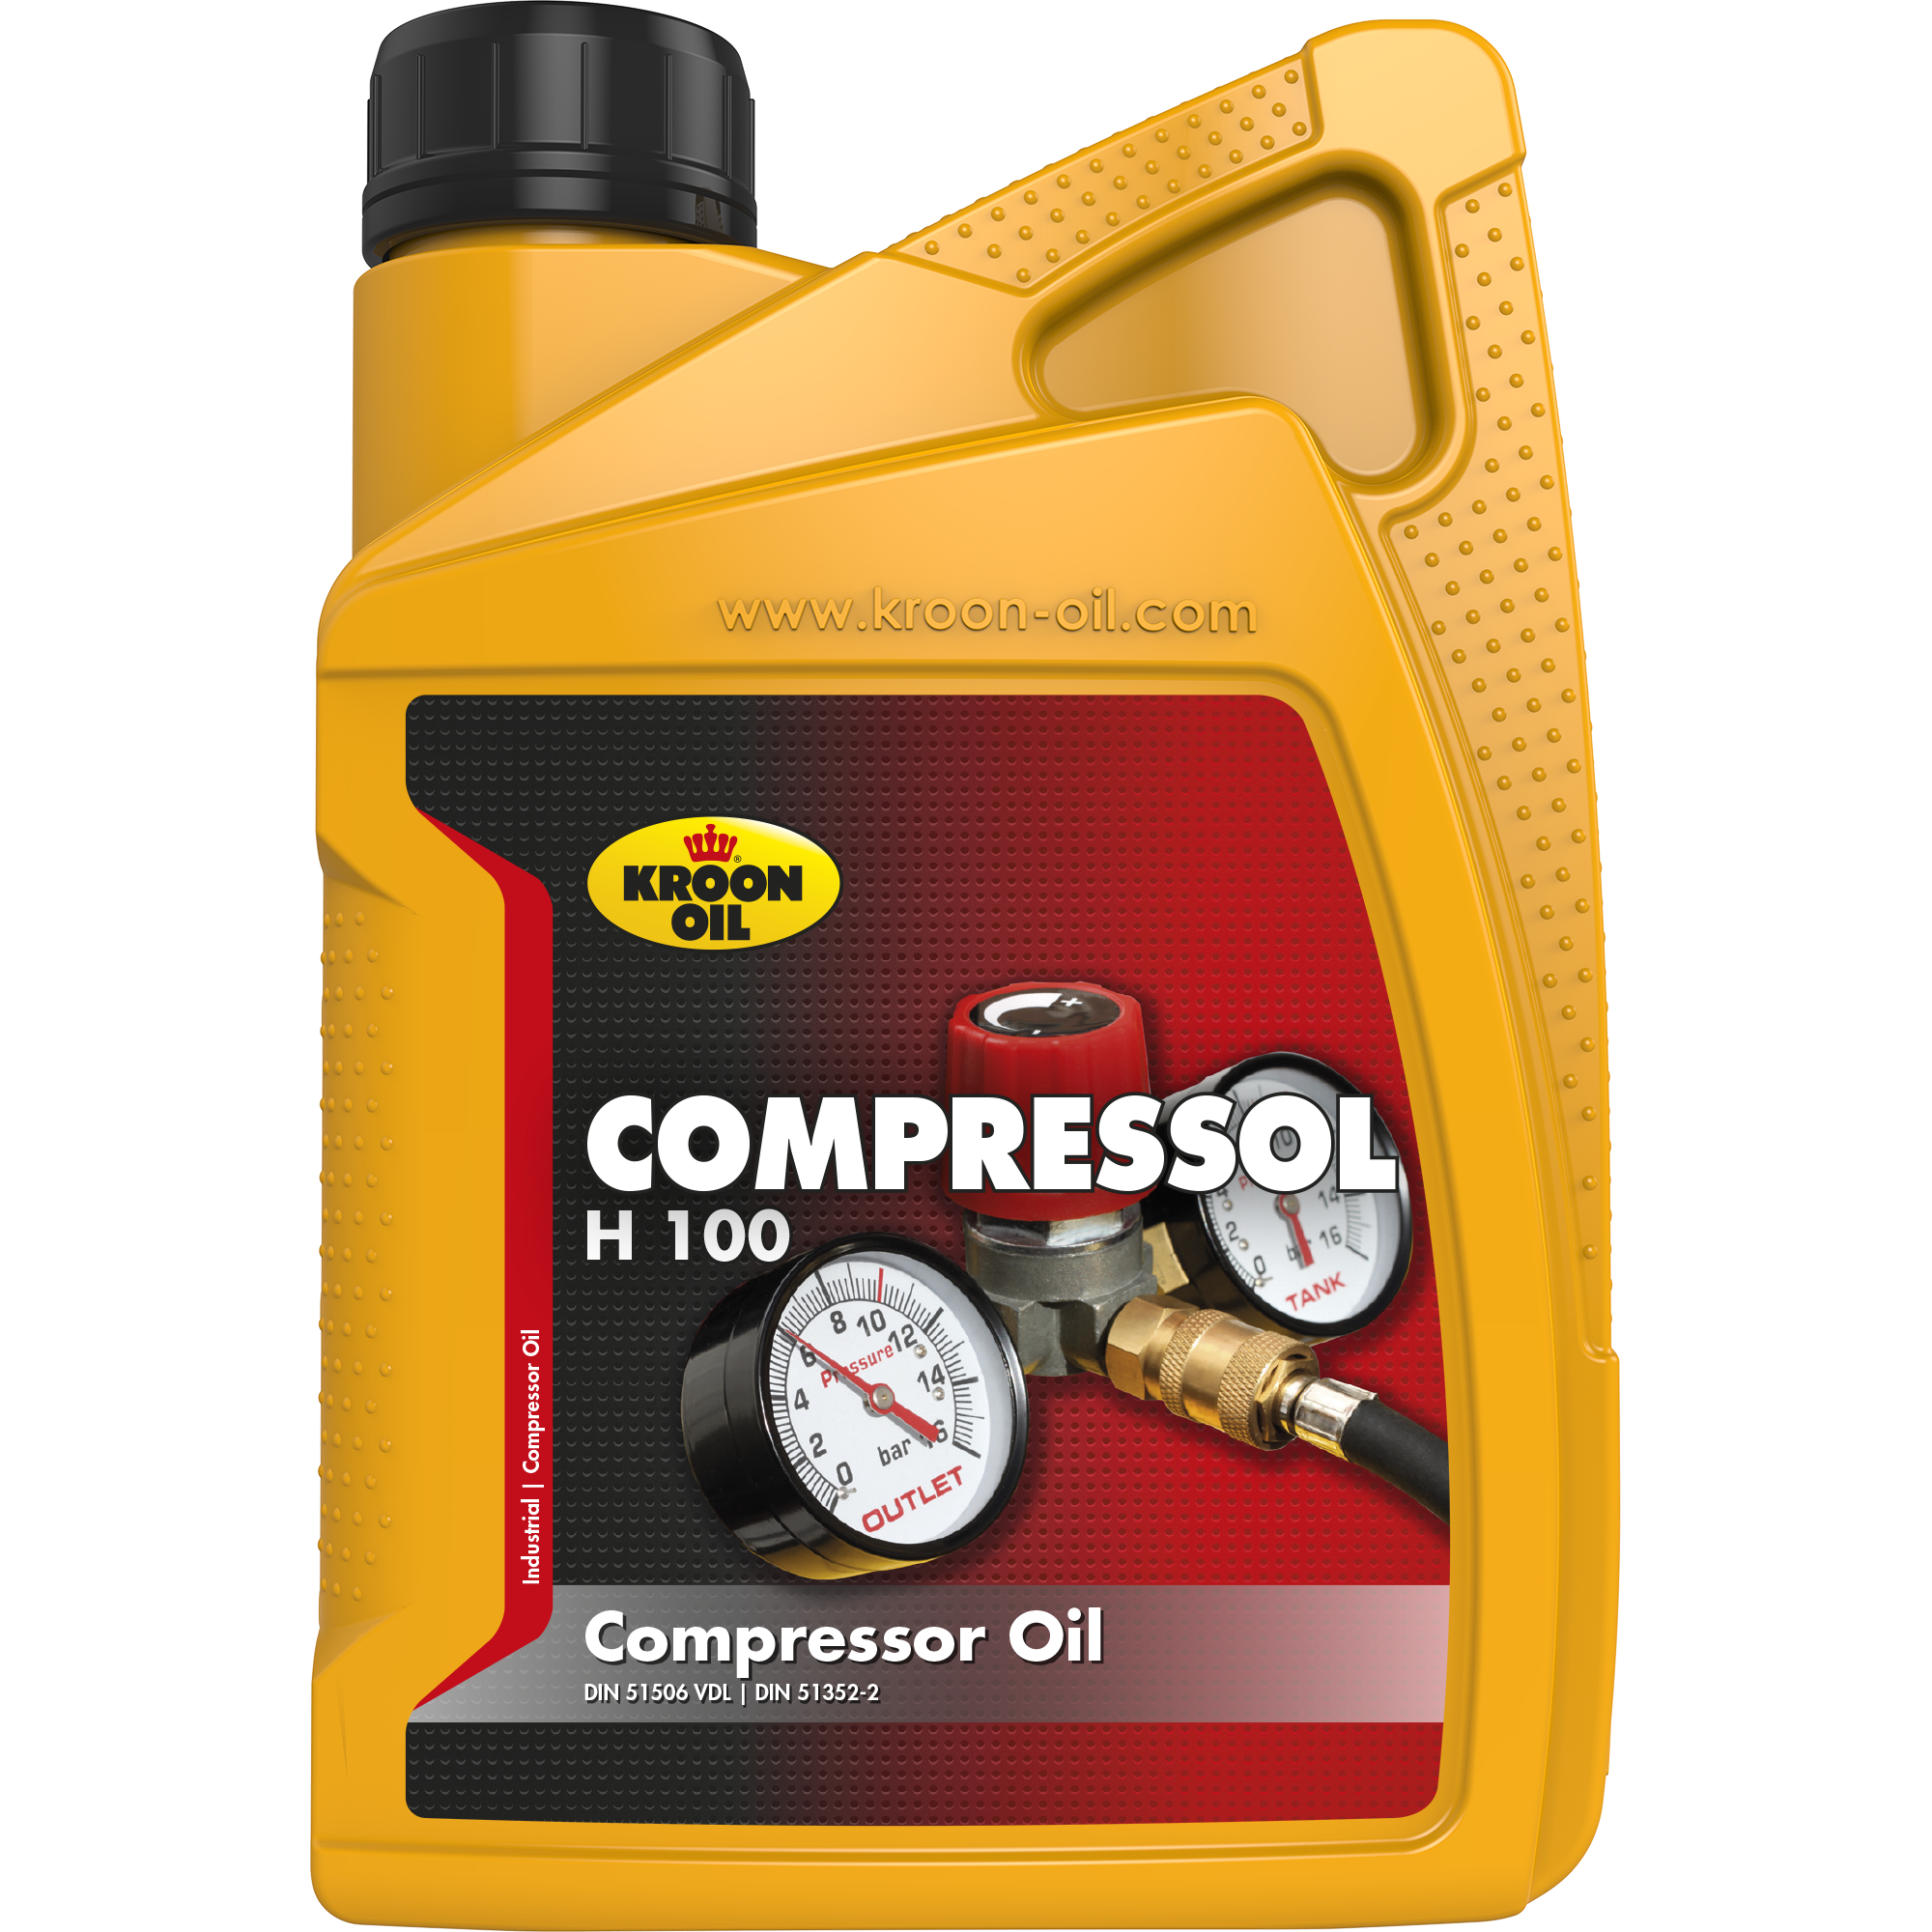 33479-1 Compressol H 100 is een compressorolie gebaseerd op zeer hoog doorgeraffineerde basisolie, met van nature een hoge weerstand tegen veroudering.